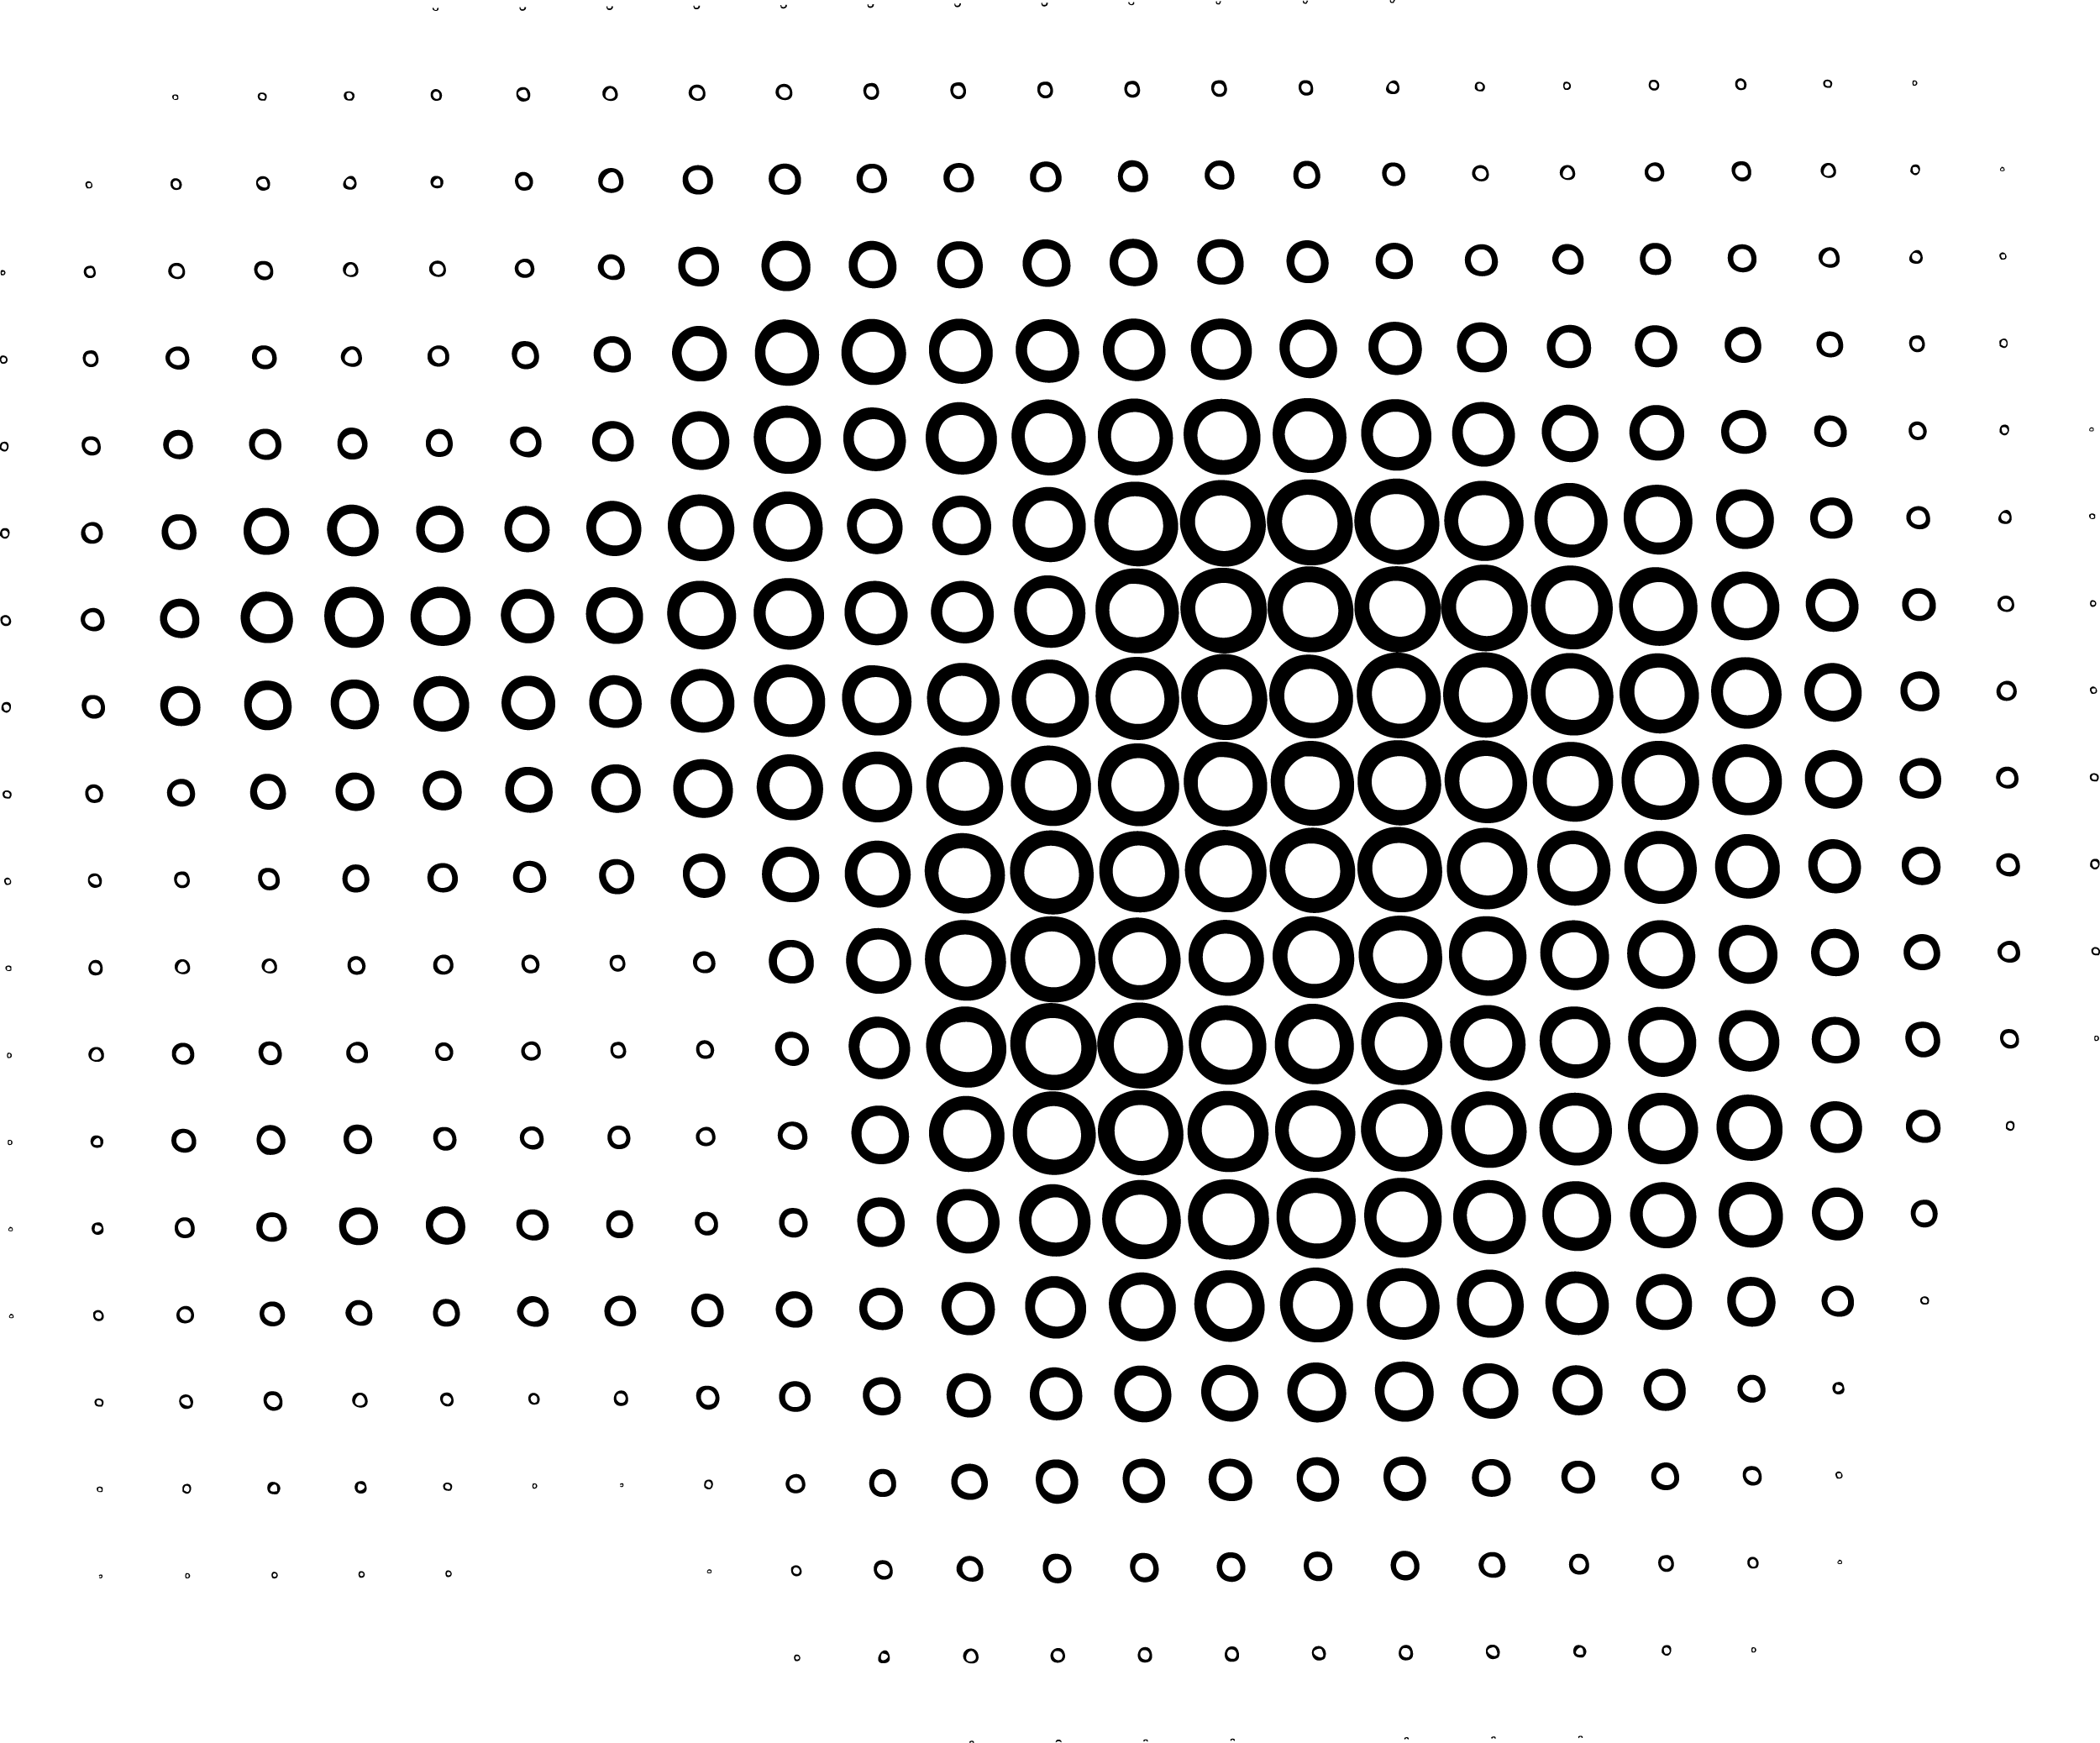 Schwarze abstrakte Linien PNG-Bild mit transparentem Hintergrund